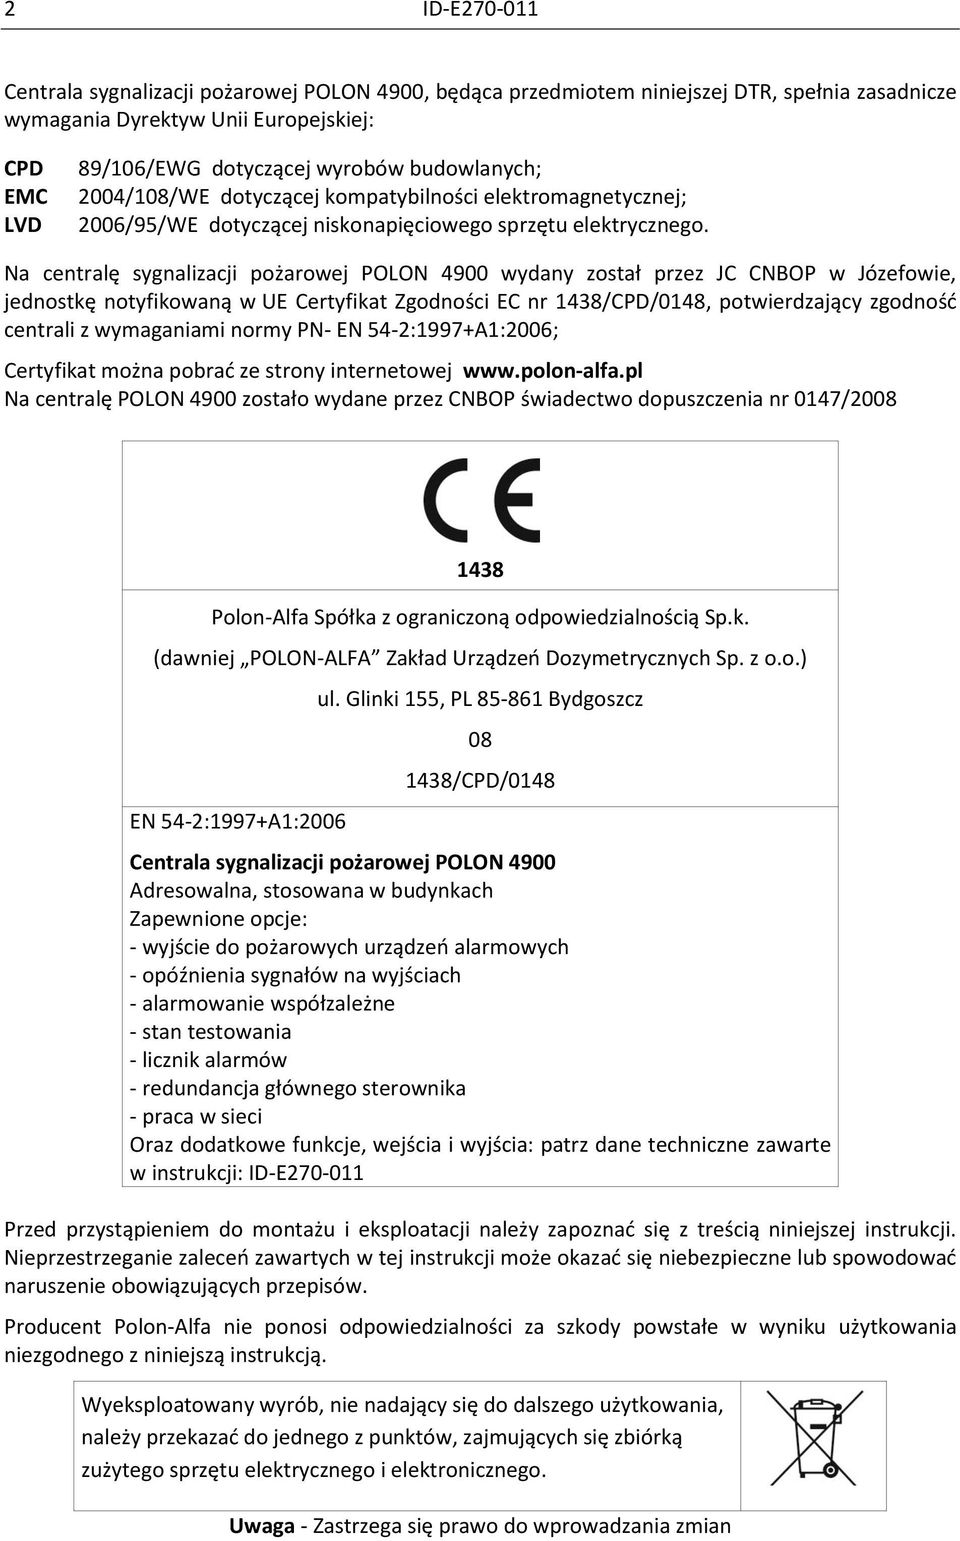 Na centralę sygnalizacji pożarowej POLON 4900 wydany został przez JC CNBOP w Józefowie, jednostkę notyfikowaną w UE Certyfikat Zgodności EC nr 1438/CPD/0148, potwierdzający zgodność centrali z